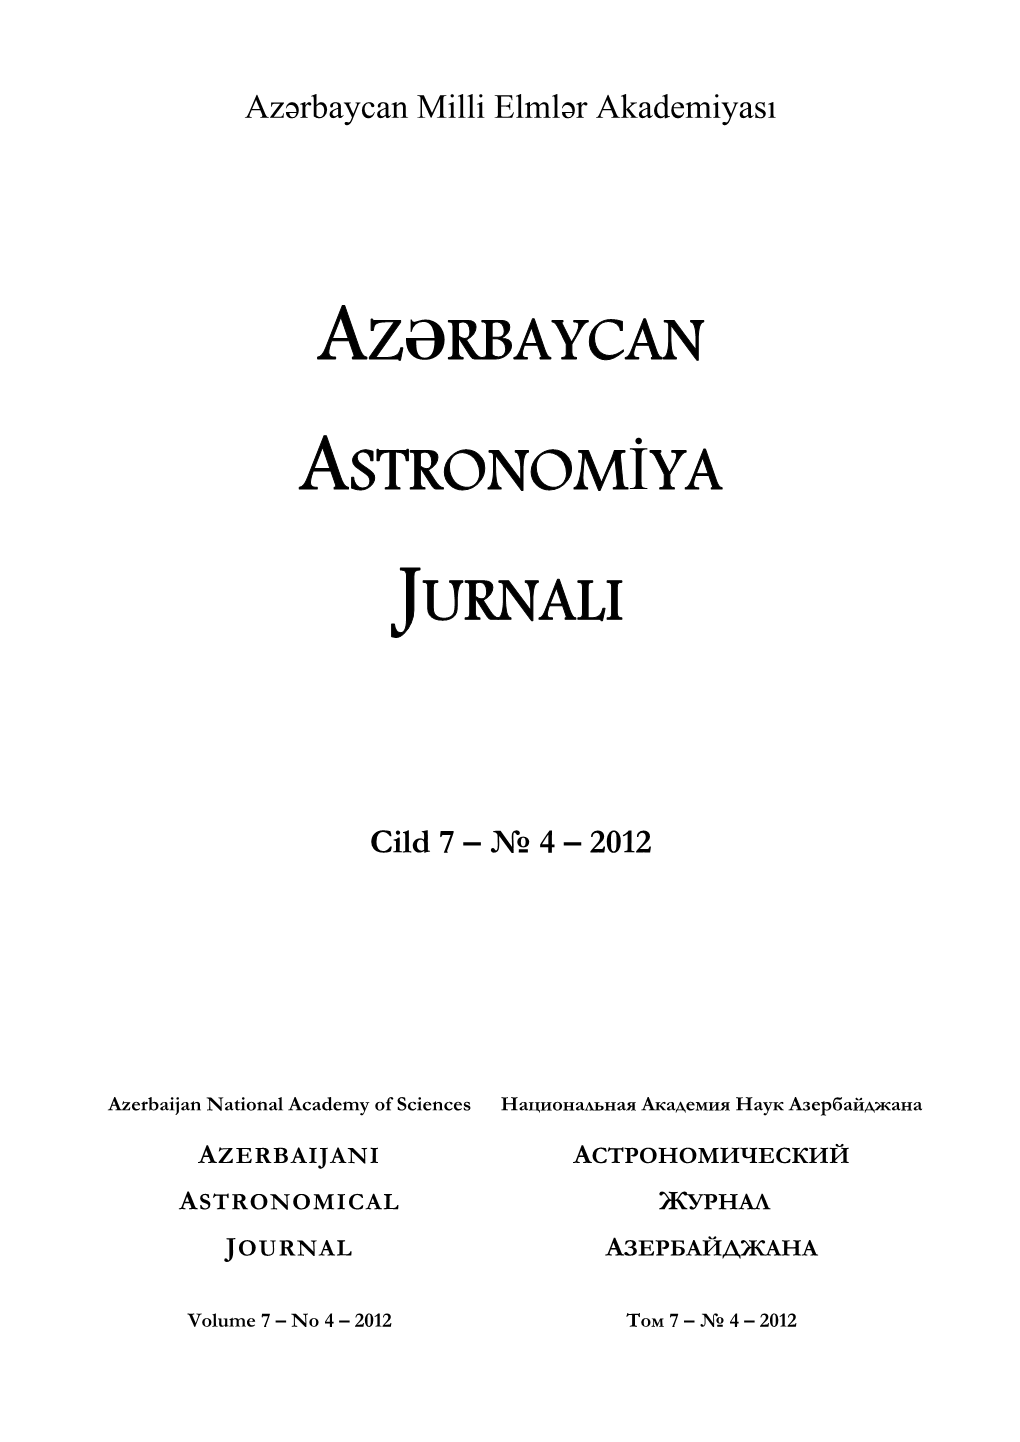 Azərbaycan Astronomiya Jurnali